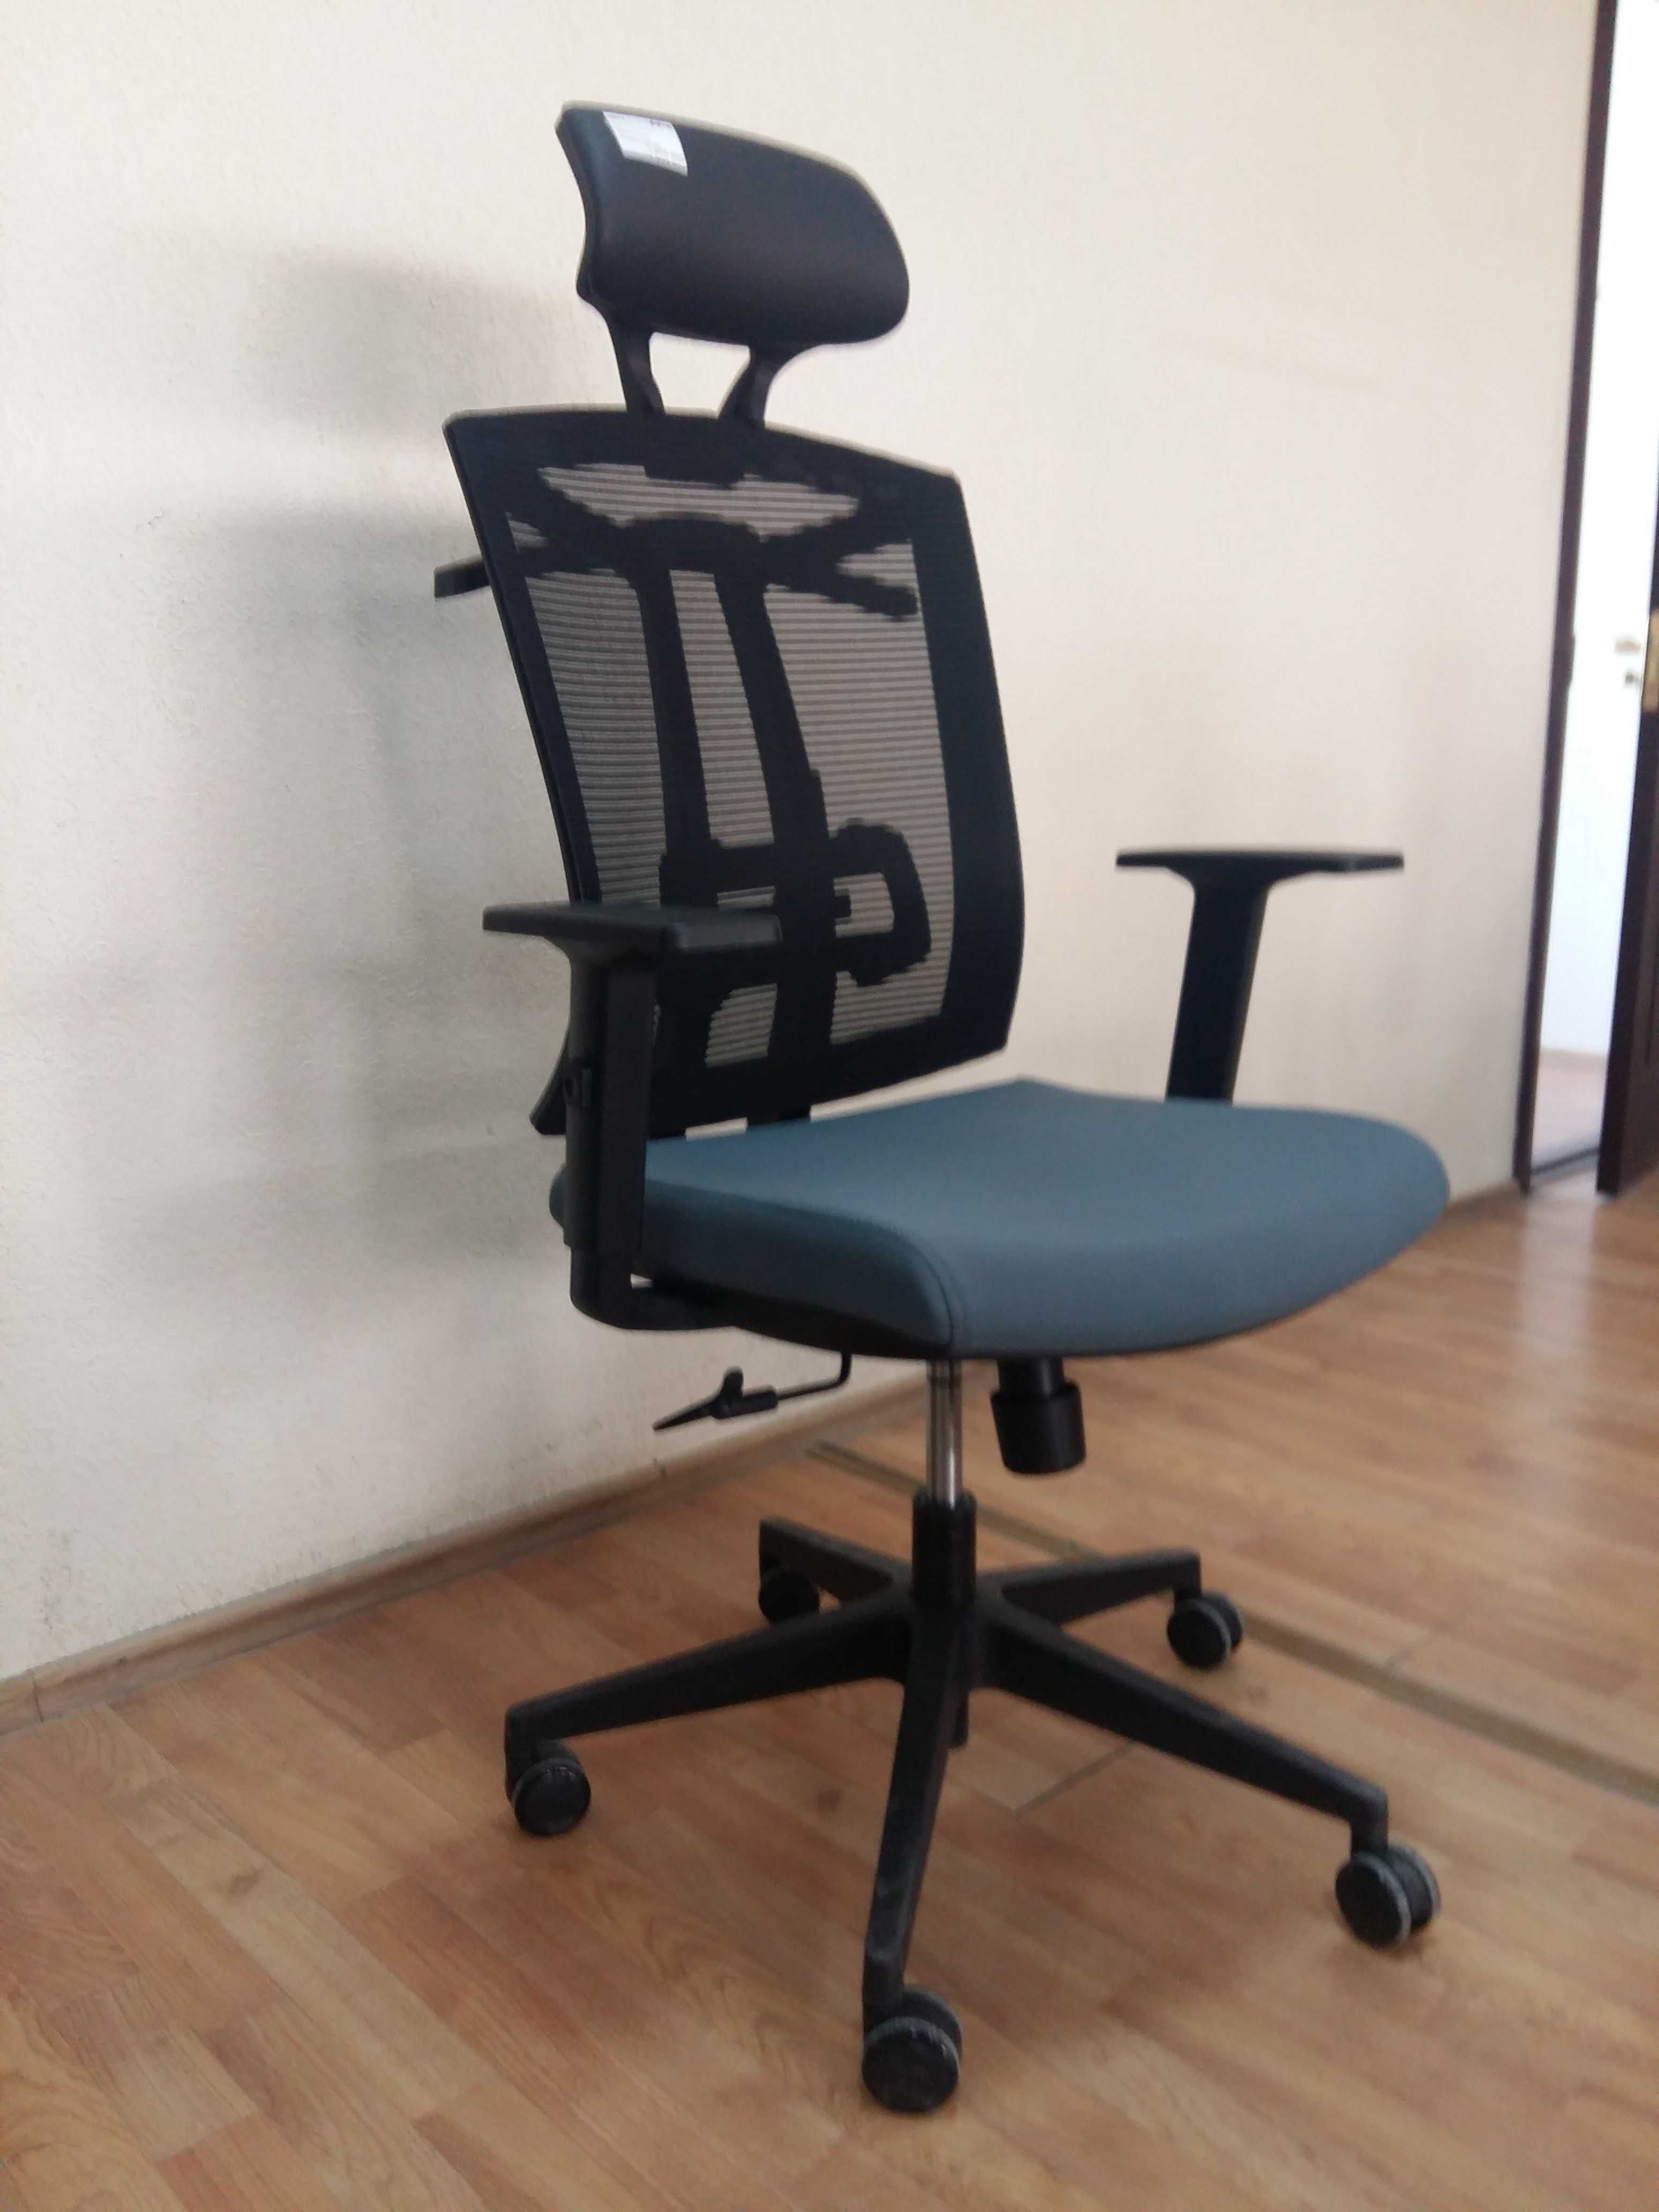 Офисное кресло Arano (6206A-2) (доставка бесплатная, гарантия)